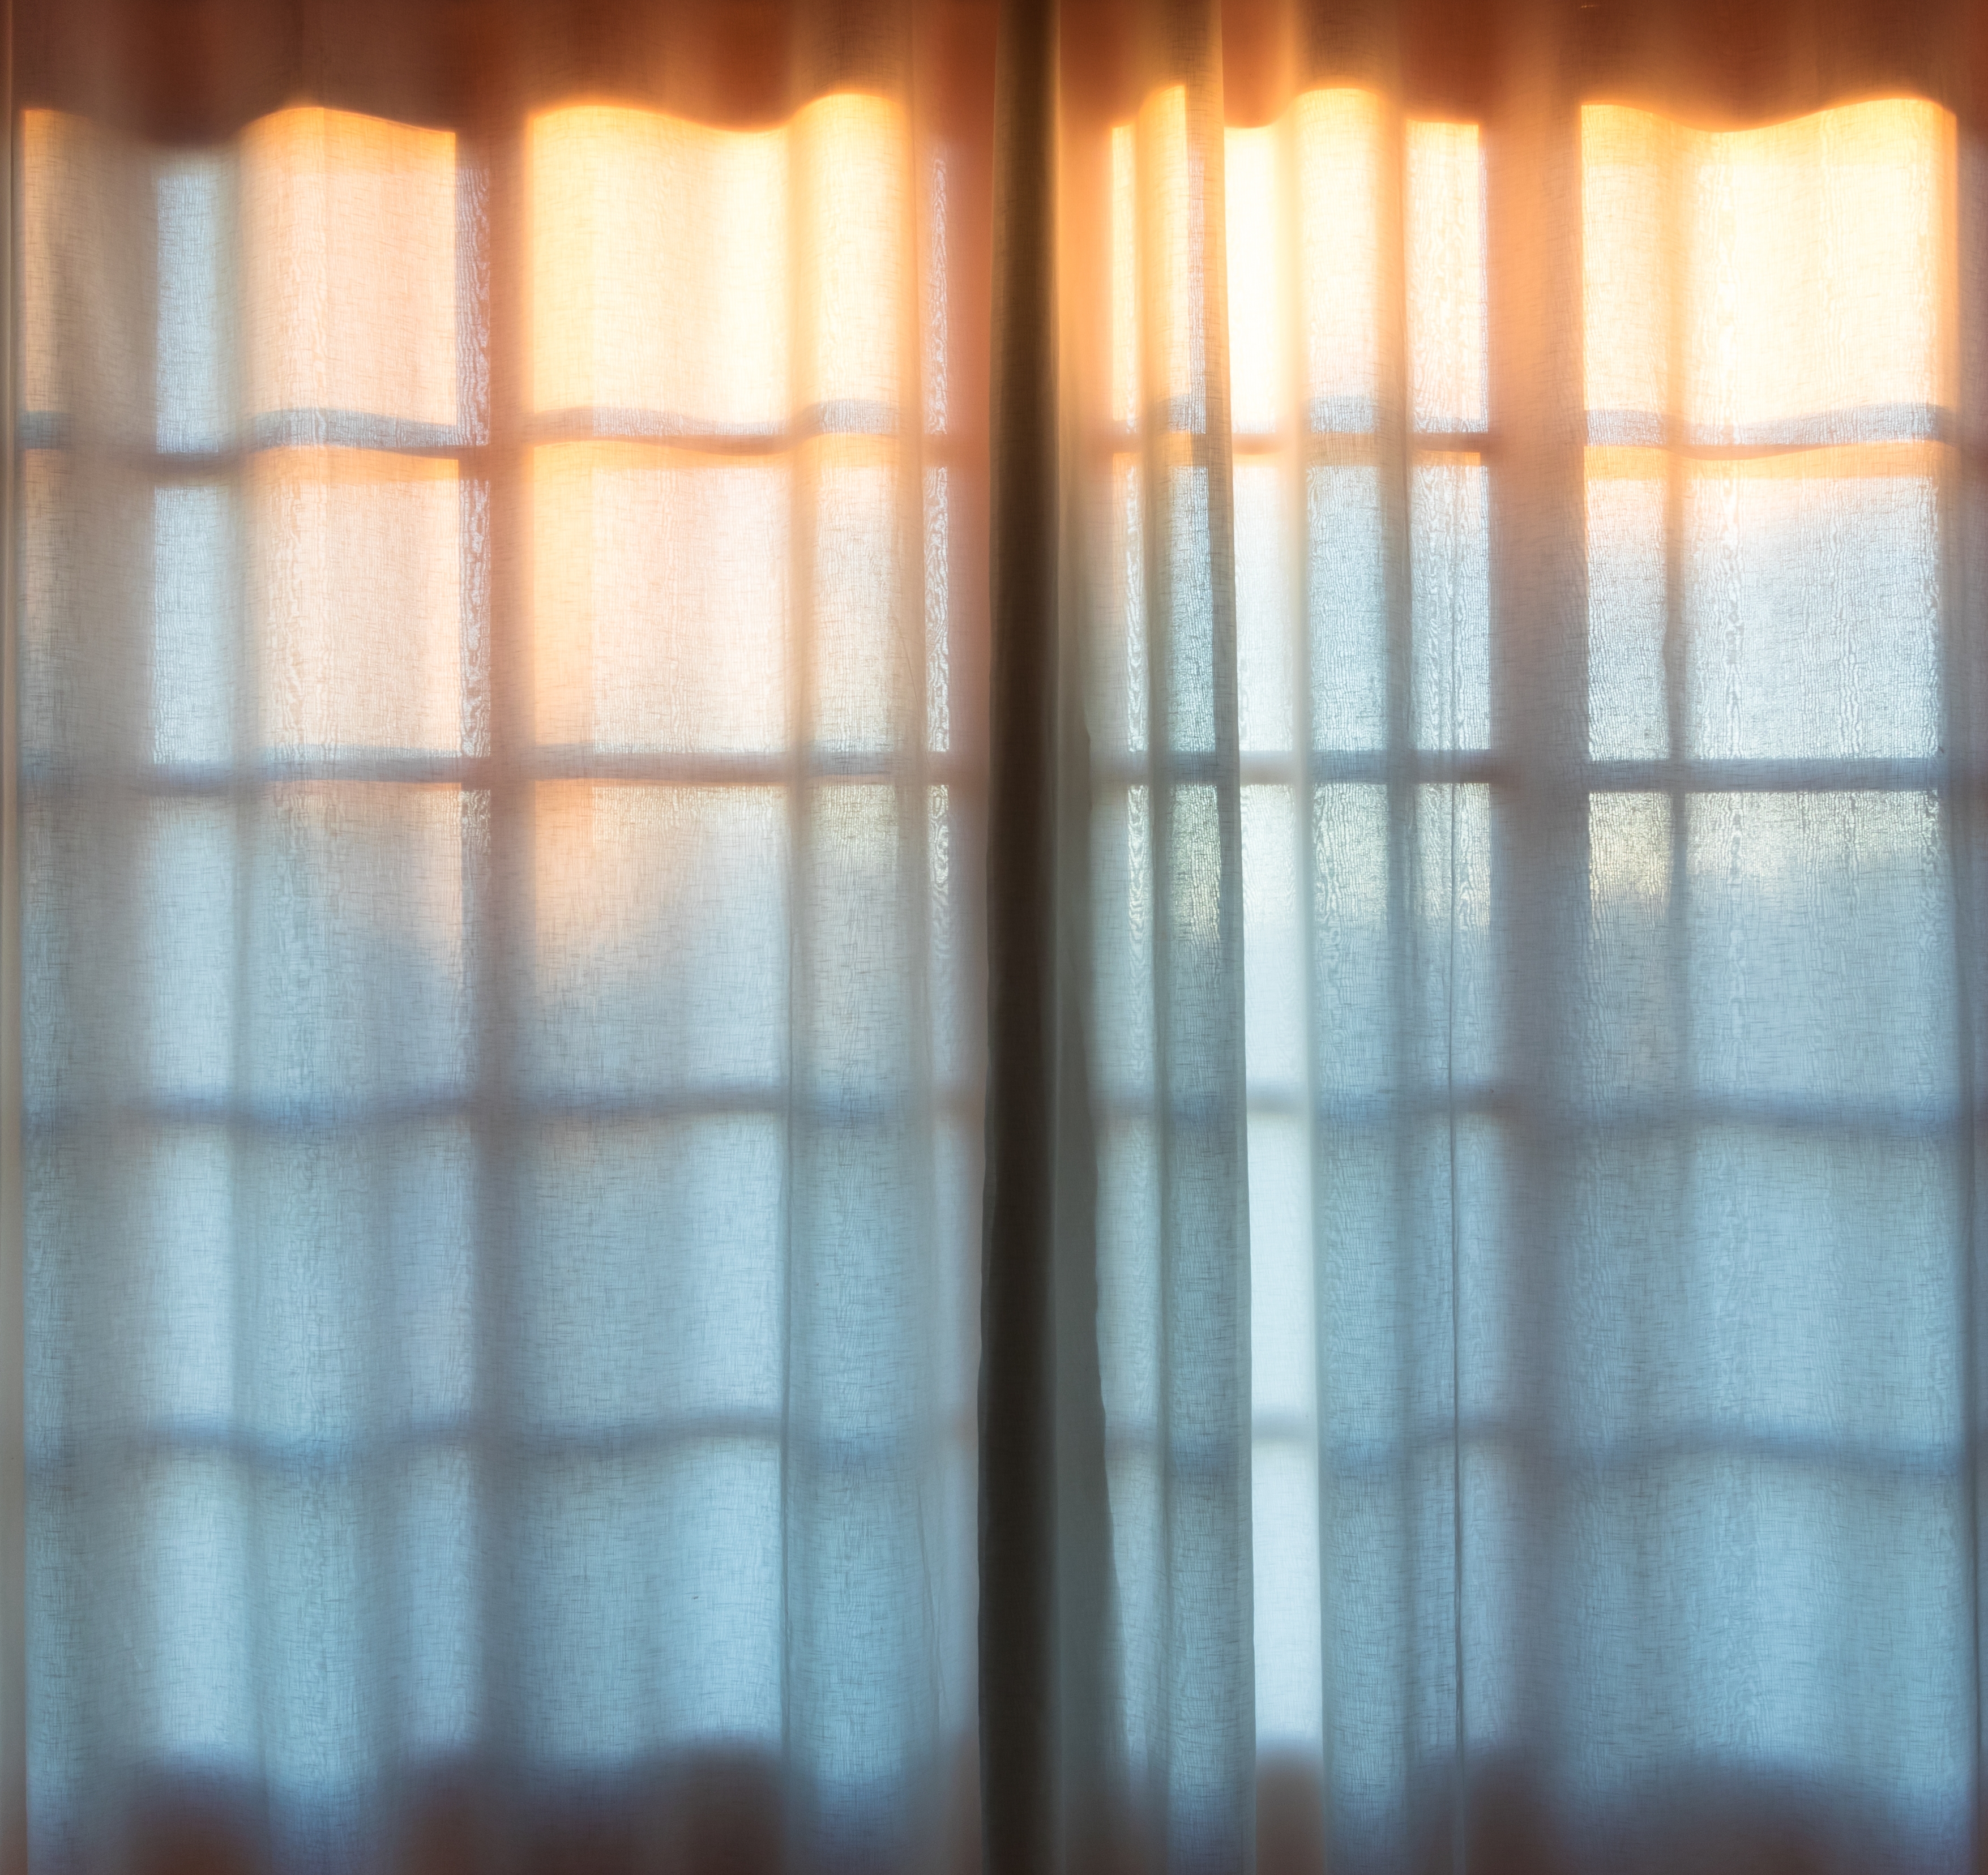 Puesta de sol tras una ventana | Fuente: Shutterstock